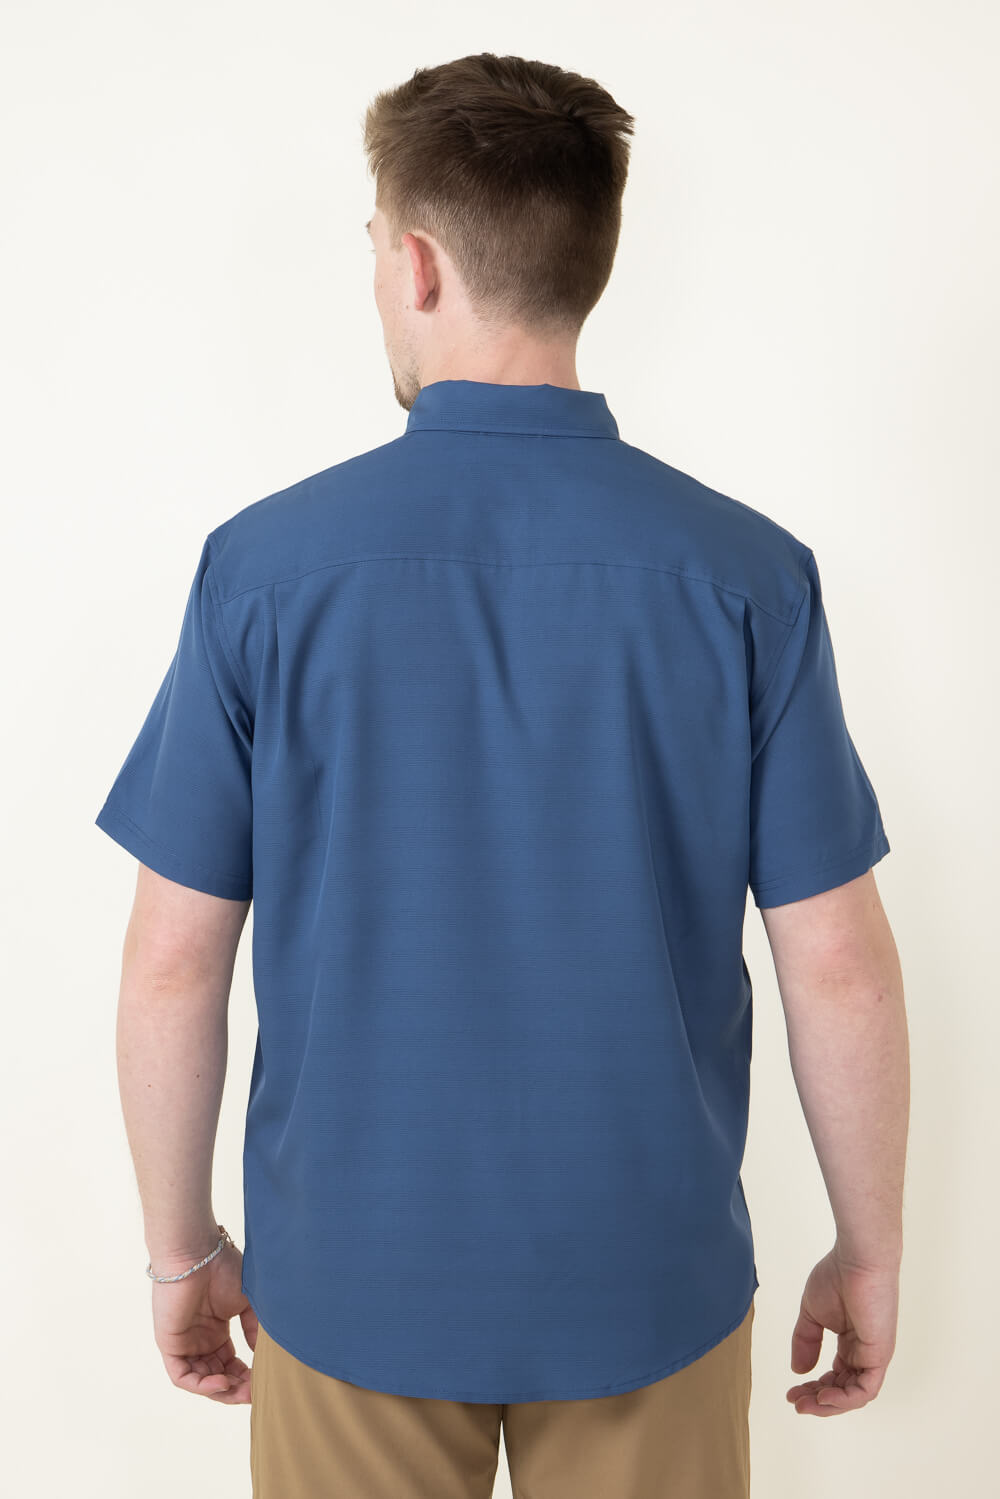 Huk Fishing Kona Cross Dye Stripe Button Down Shirt for Men in Blue